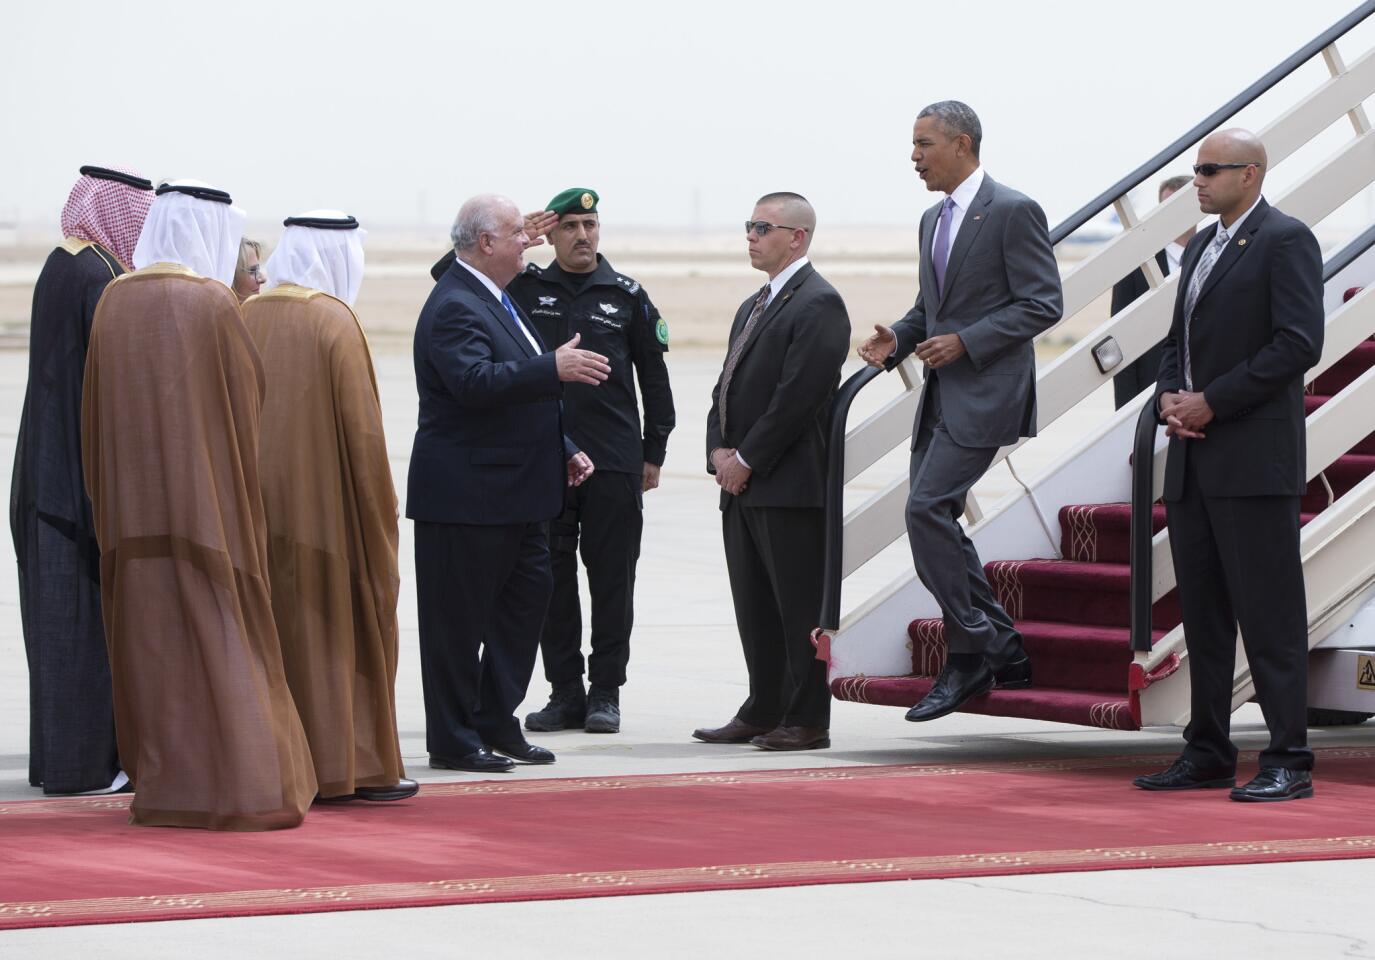 President Obama in Saudi Arabia